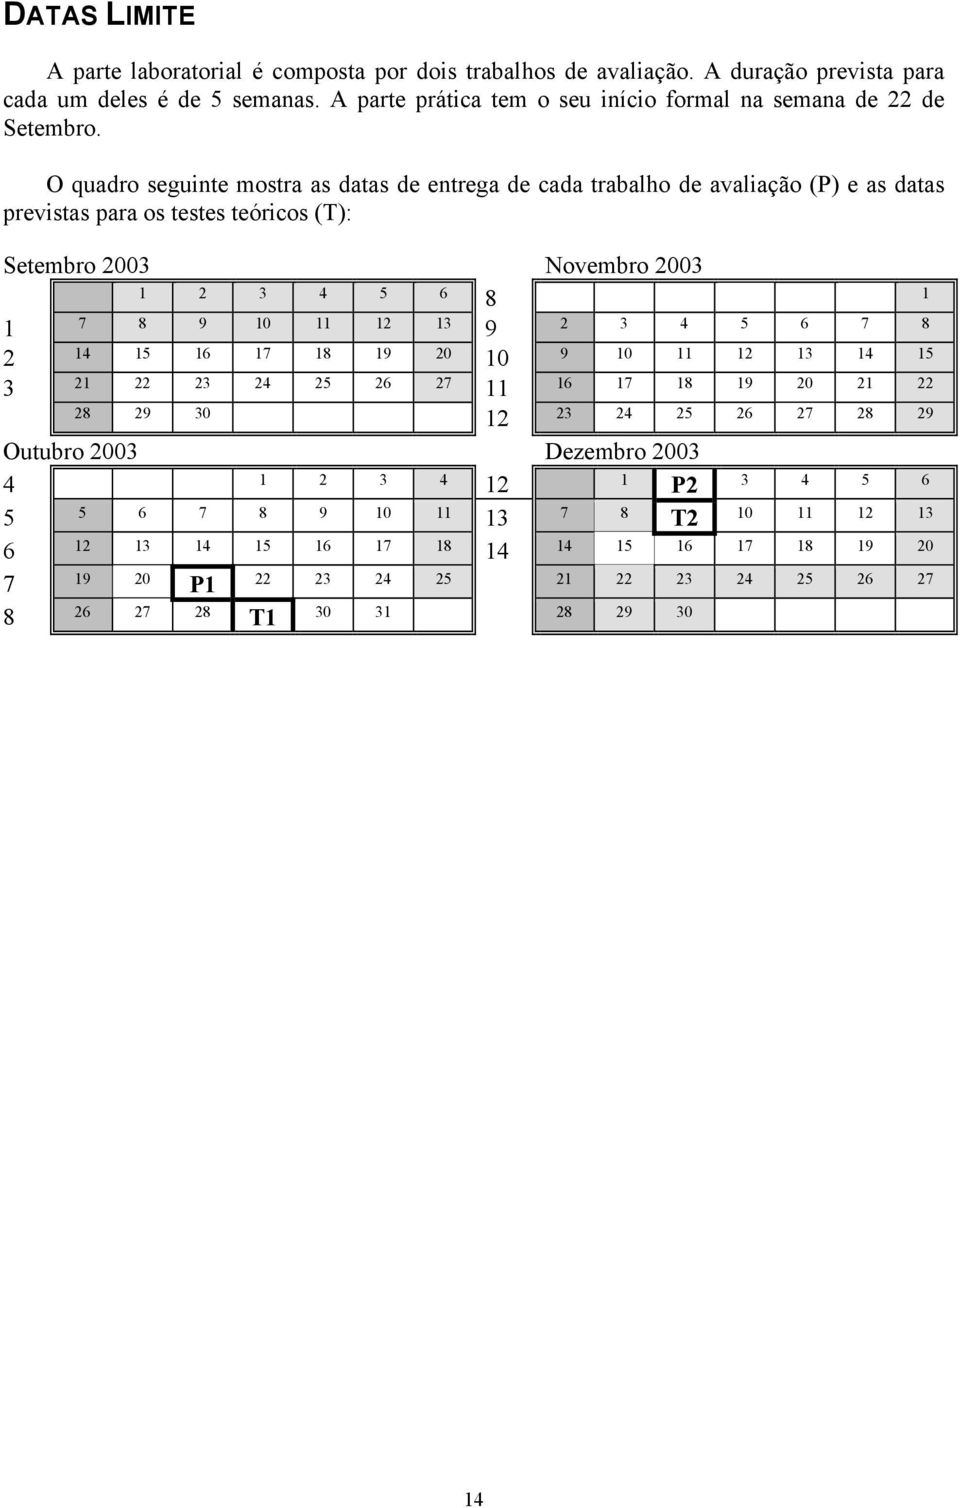 O quadro seguinte mostra as datas de entrega de cada trabalho de avaliação (P) e as datas previstas para os testes teóricos (T): Setembro 2003 Novembro 2003 1 2 3 4 5 6 8 1 1 7 8 9 10 11